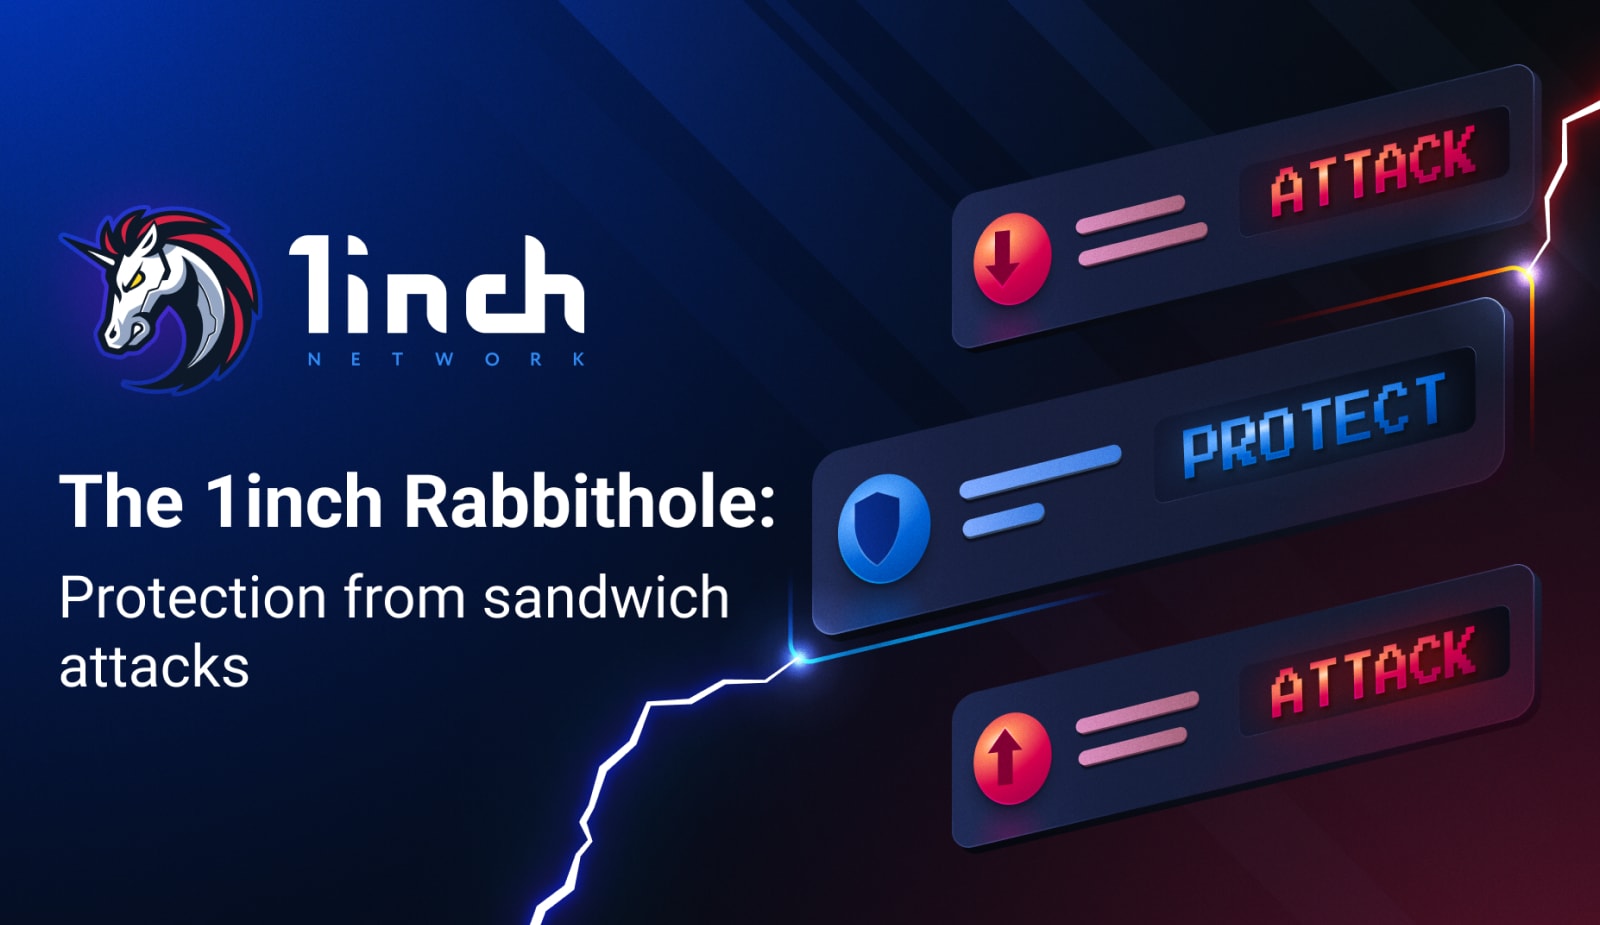 1inch внедрили инструмент Rabbithole Это прокси-сервер между клиентами, подключающими свои кошельки MetaMask, и валидаторами Ethereum